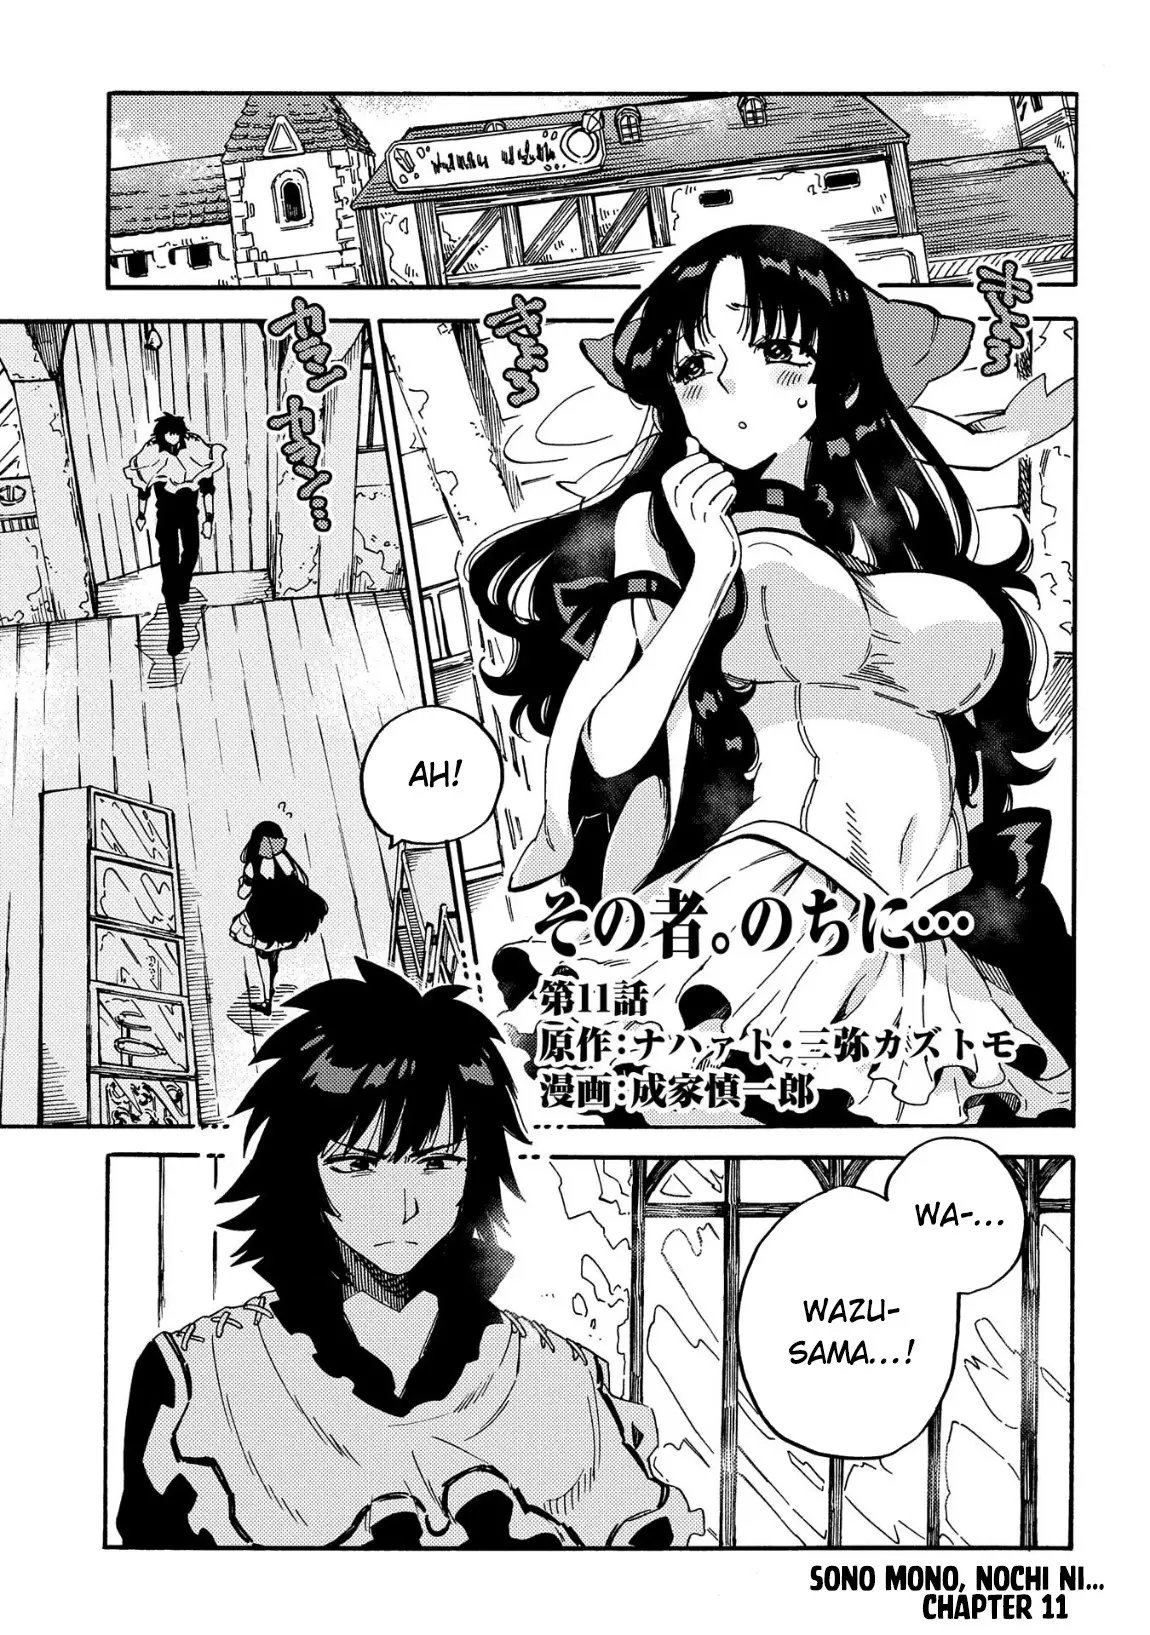 Sono Mono. Nochi Ni... (Shinichirou Nariie) - 11 page 2